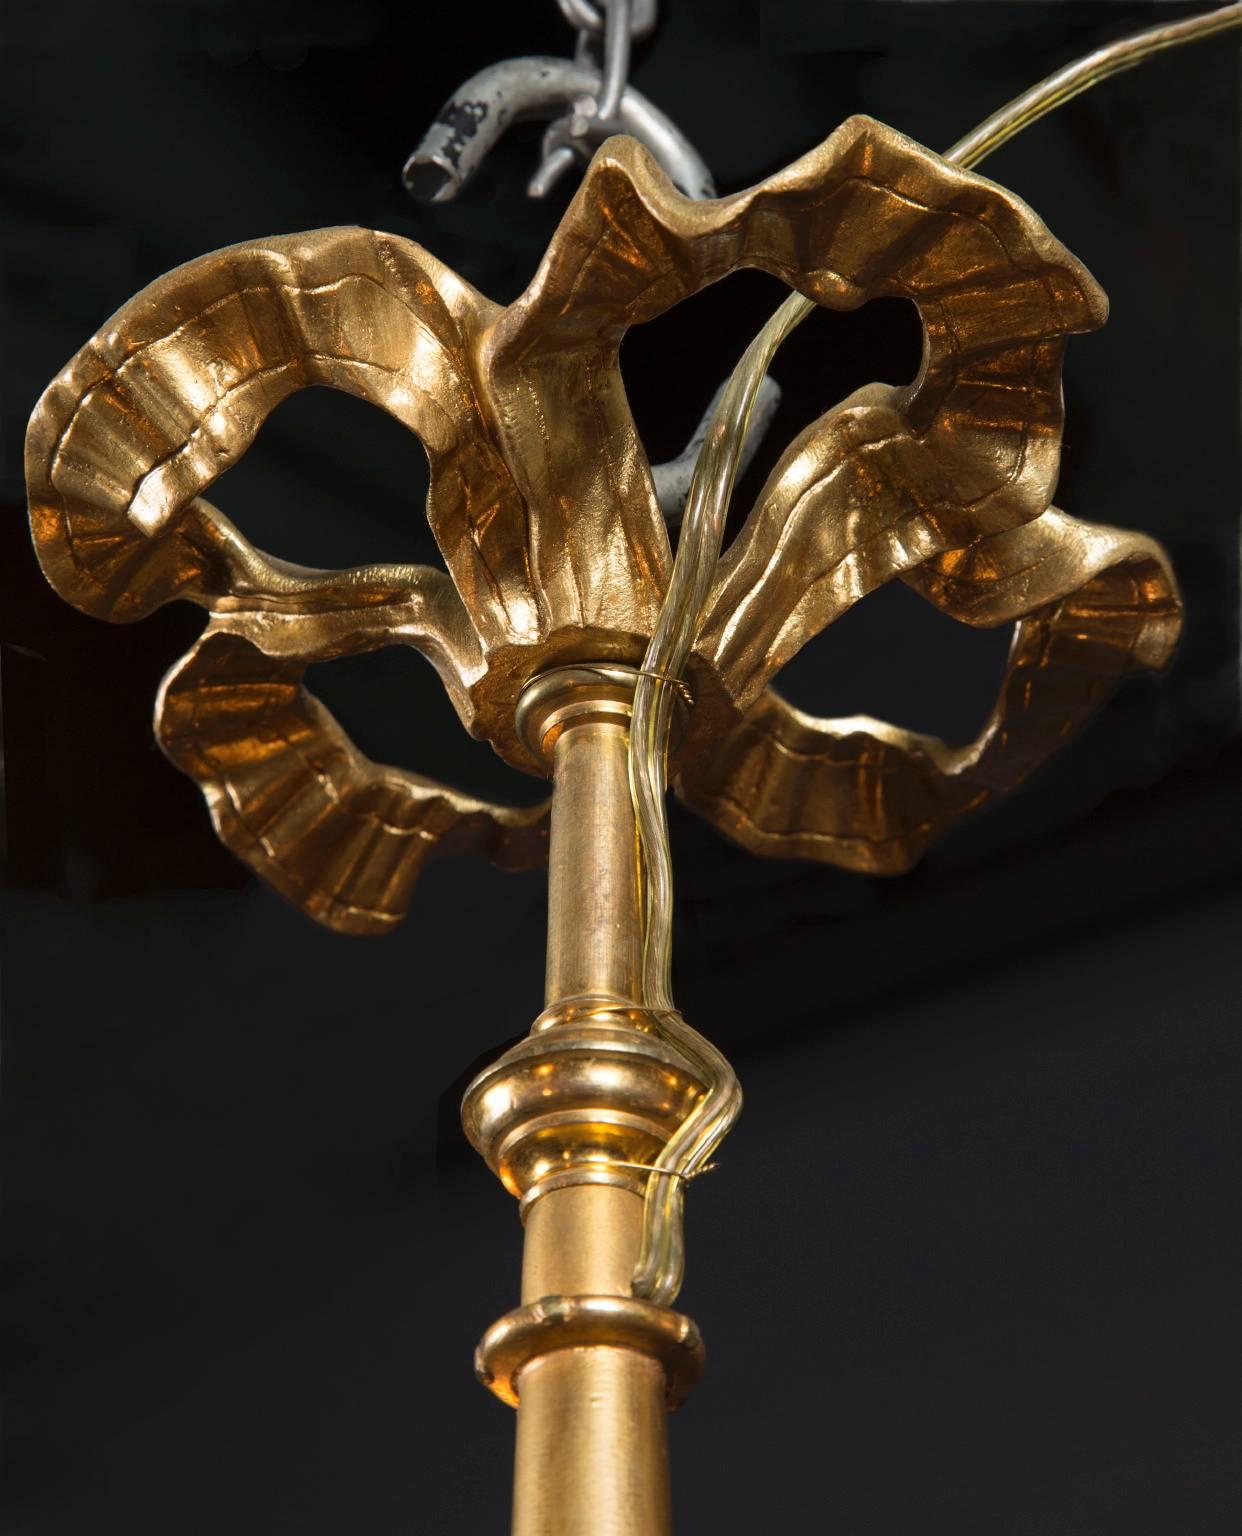 Ce lustre français de style Louis XVI en bronze d'orge, datant du XIXe siècle, est d'une élégante simplicité. La pièce présente un ruban métallique coulant au sommet, avec trois lumières disposées sur trois bras en dessous qui sont ornés de bobèches